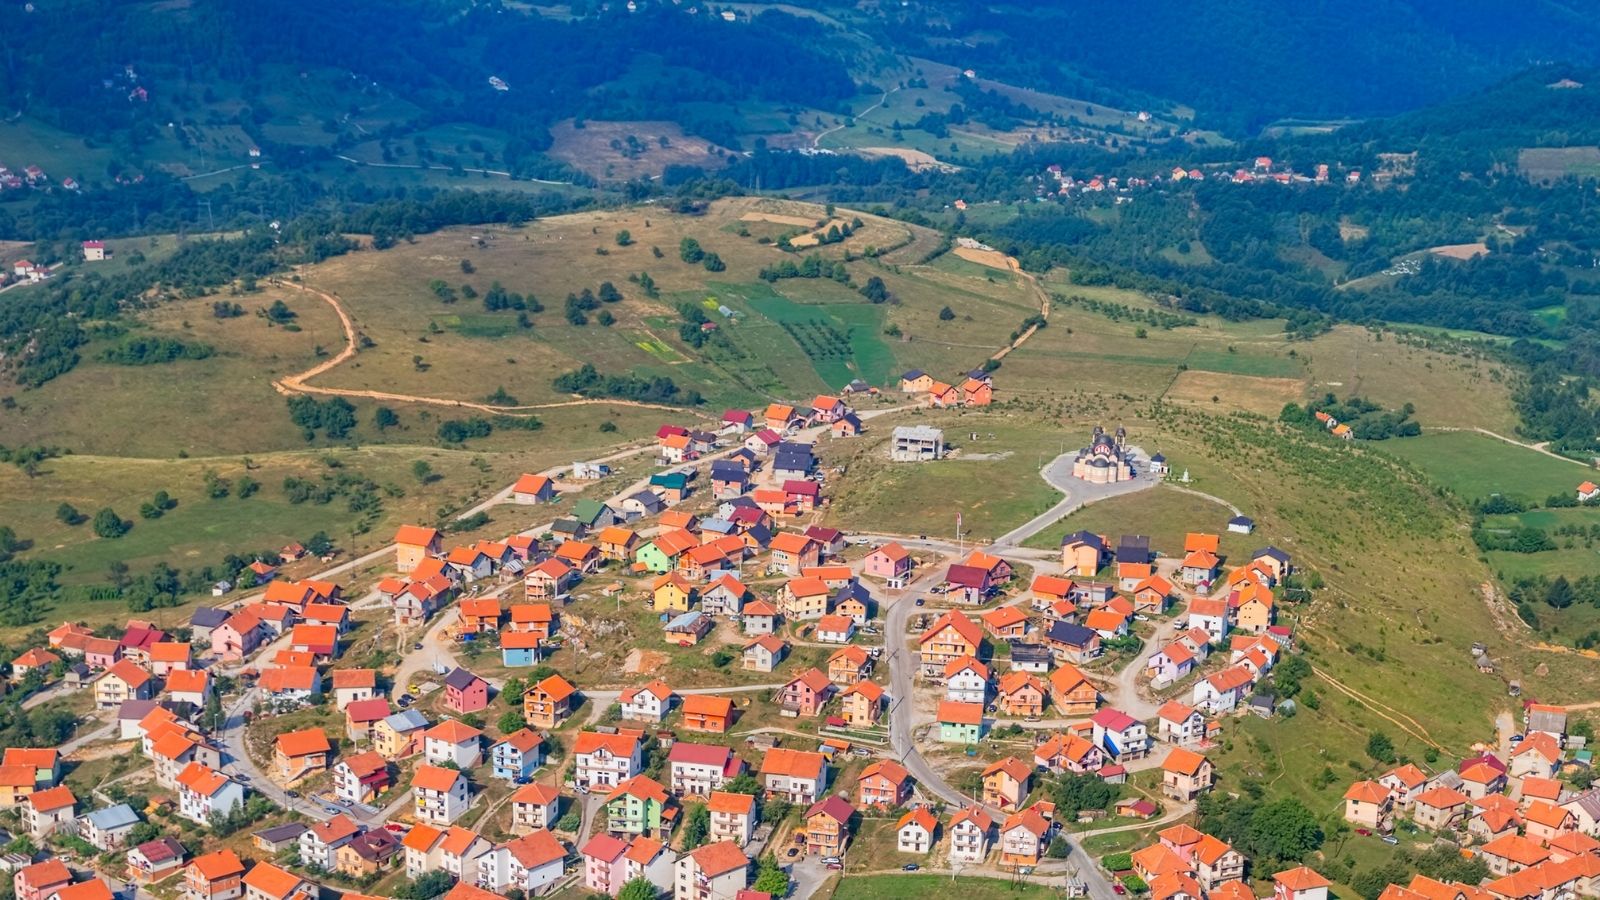 Pljevlja in Montenegro